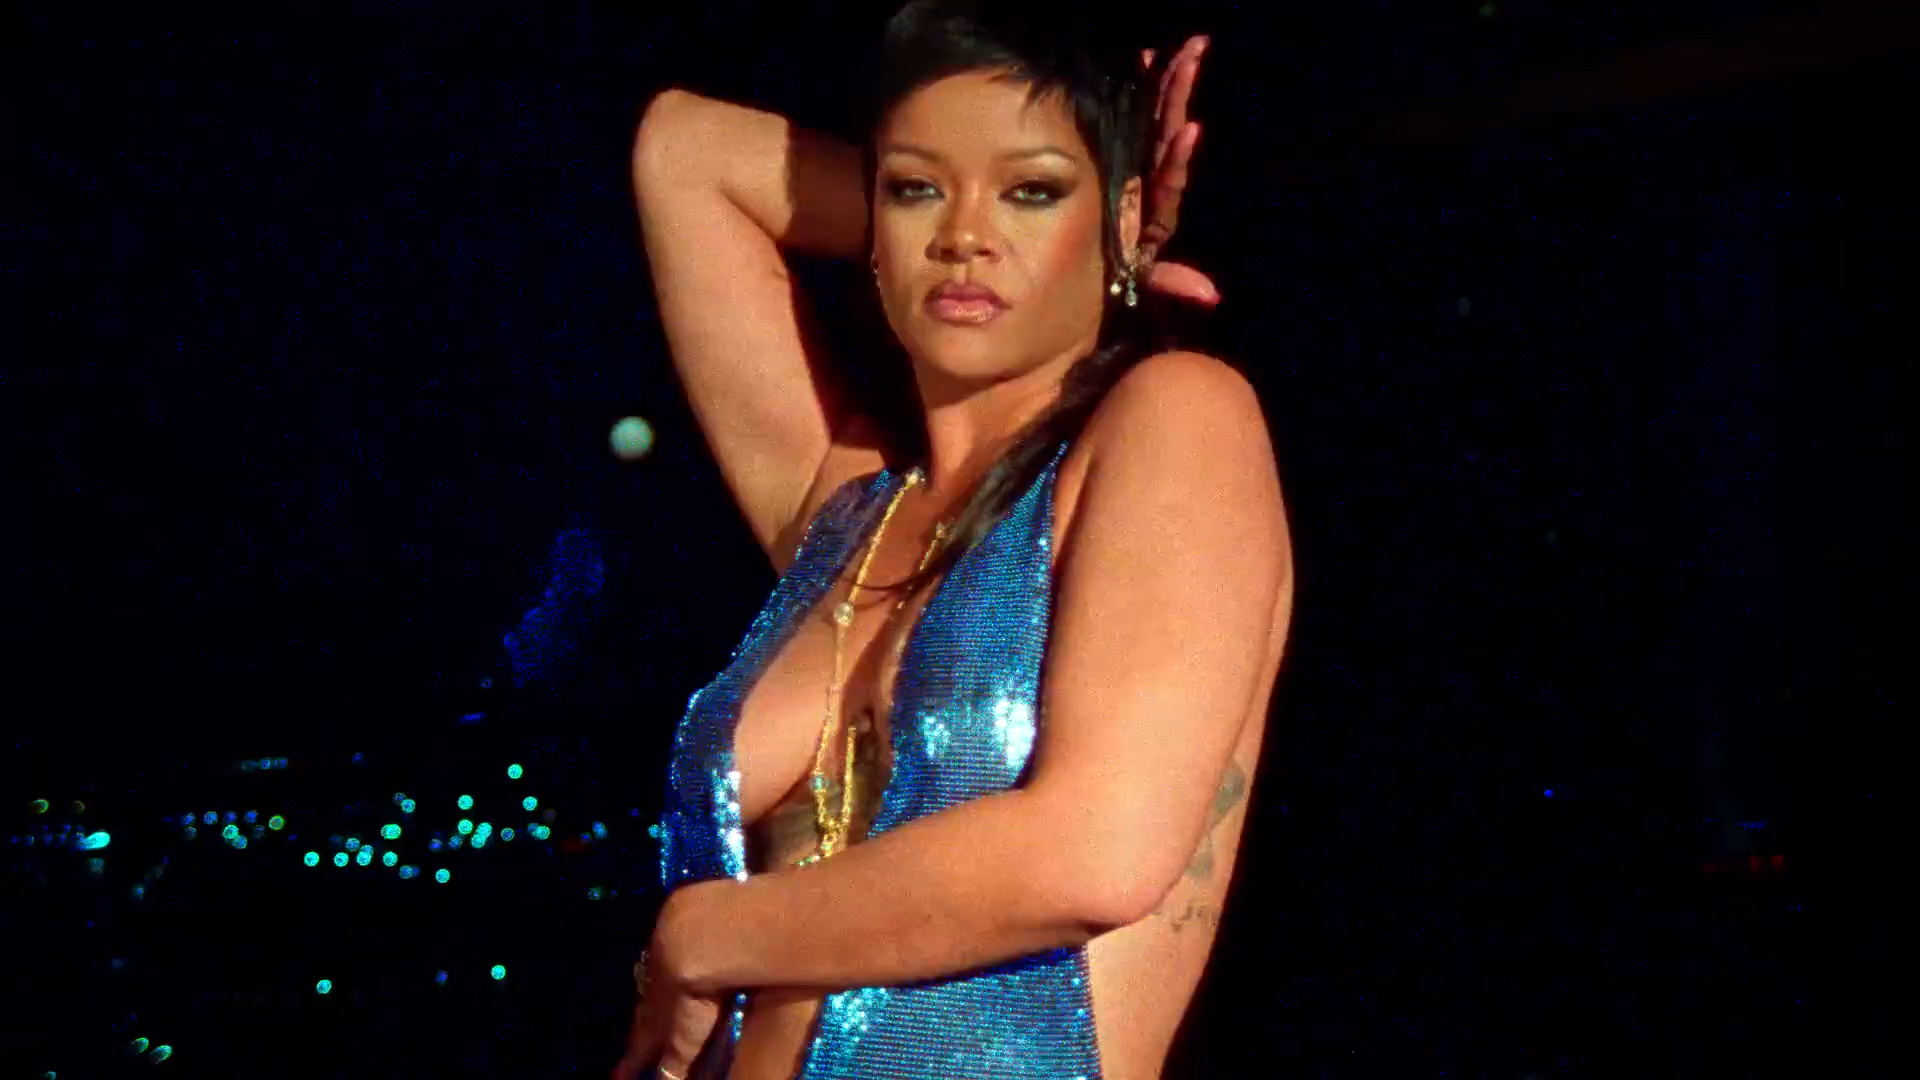 FOTOS Rihanna se roba el show! - Photo 35